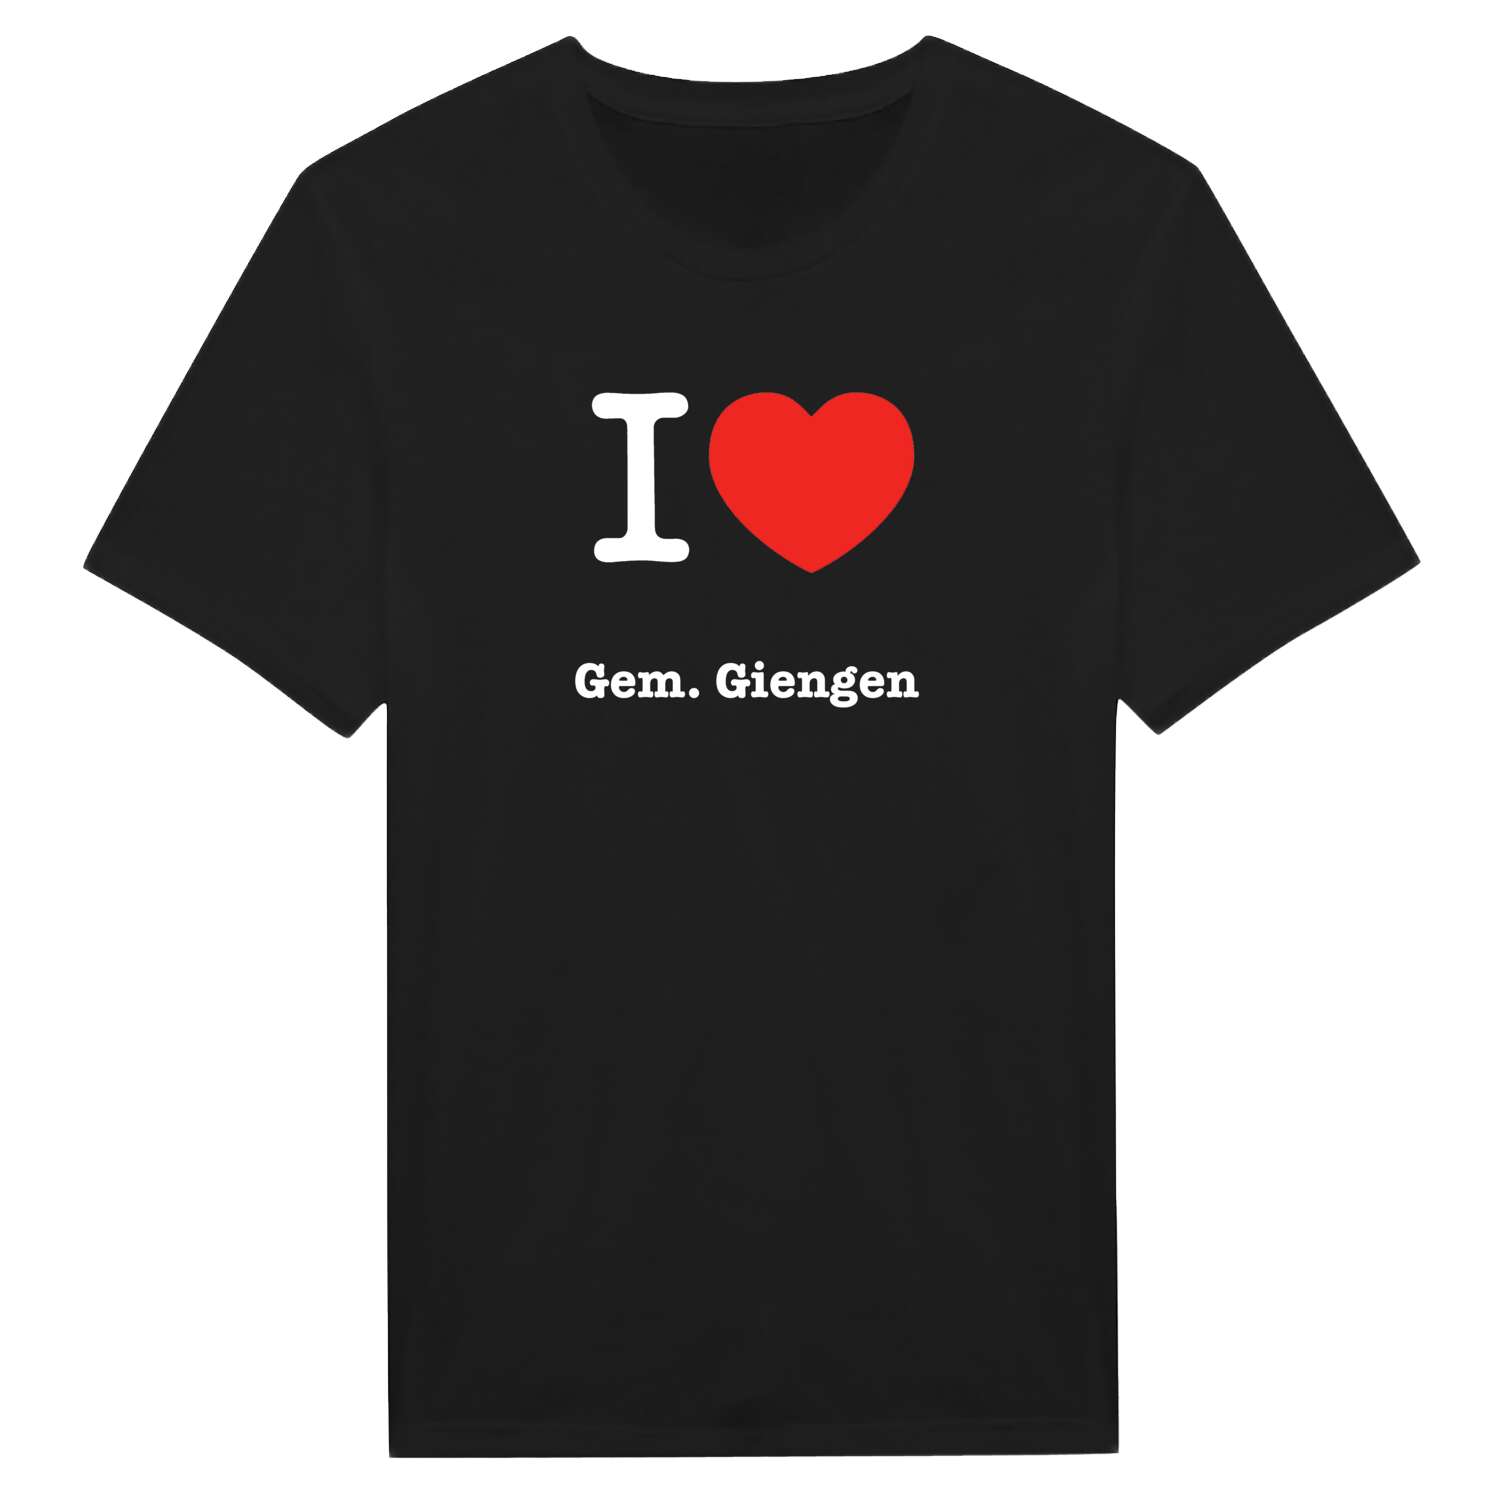 Gem. Giengen T-Shirt »I love«